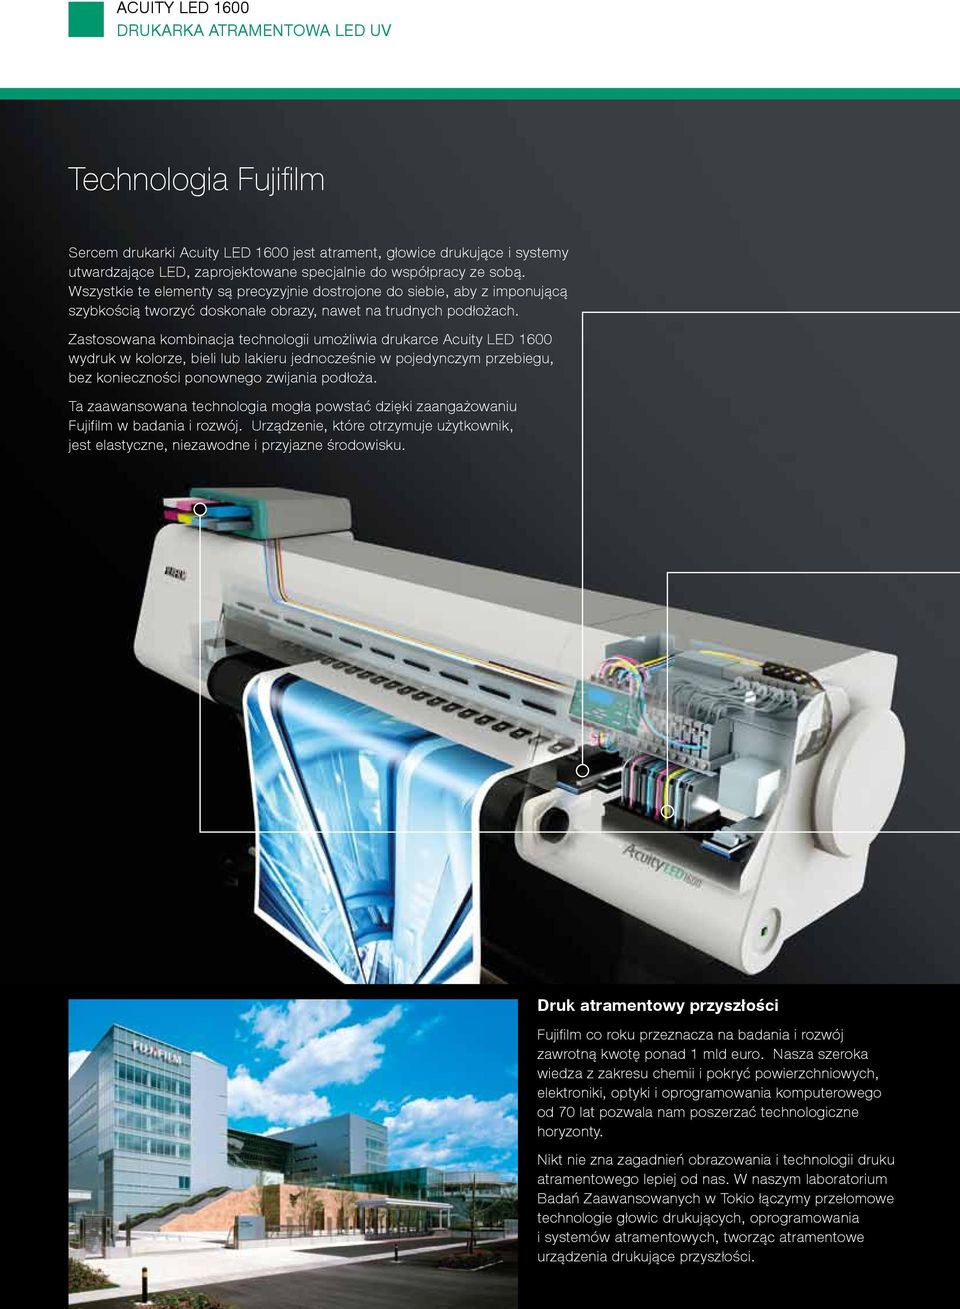 Zastosowana kombinacja technologii umożliwia drukarce Acuity LED 1600 wydruk w kolorze, bieli lub lakieru jednocześnie w pojedynczym przebiegu, bez konieczności ponownego zwijania podłoża.